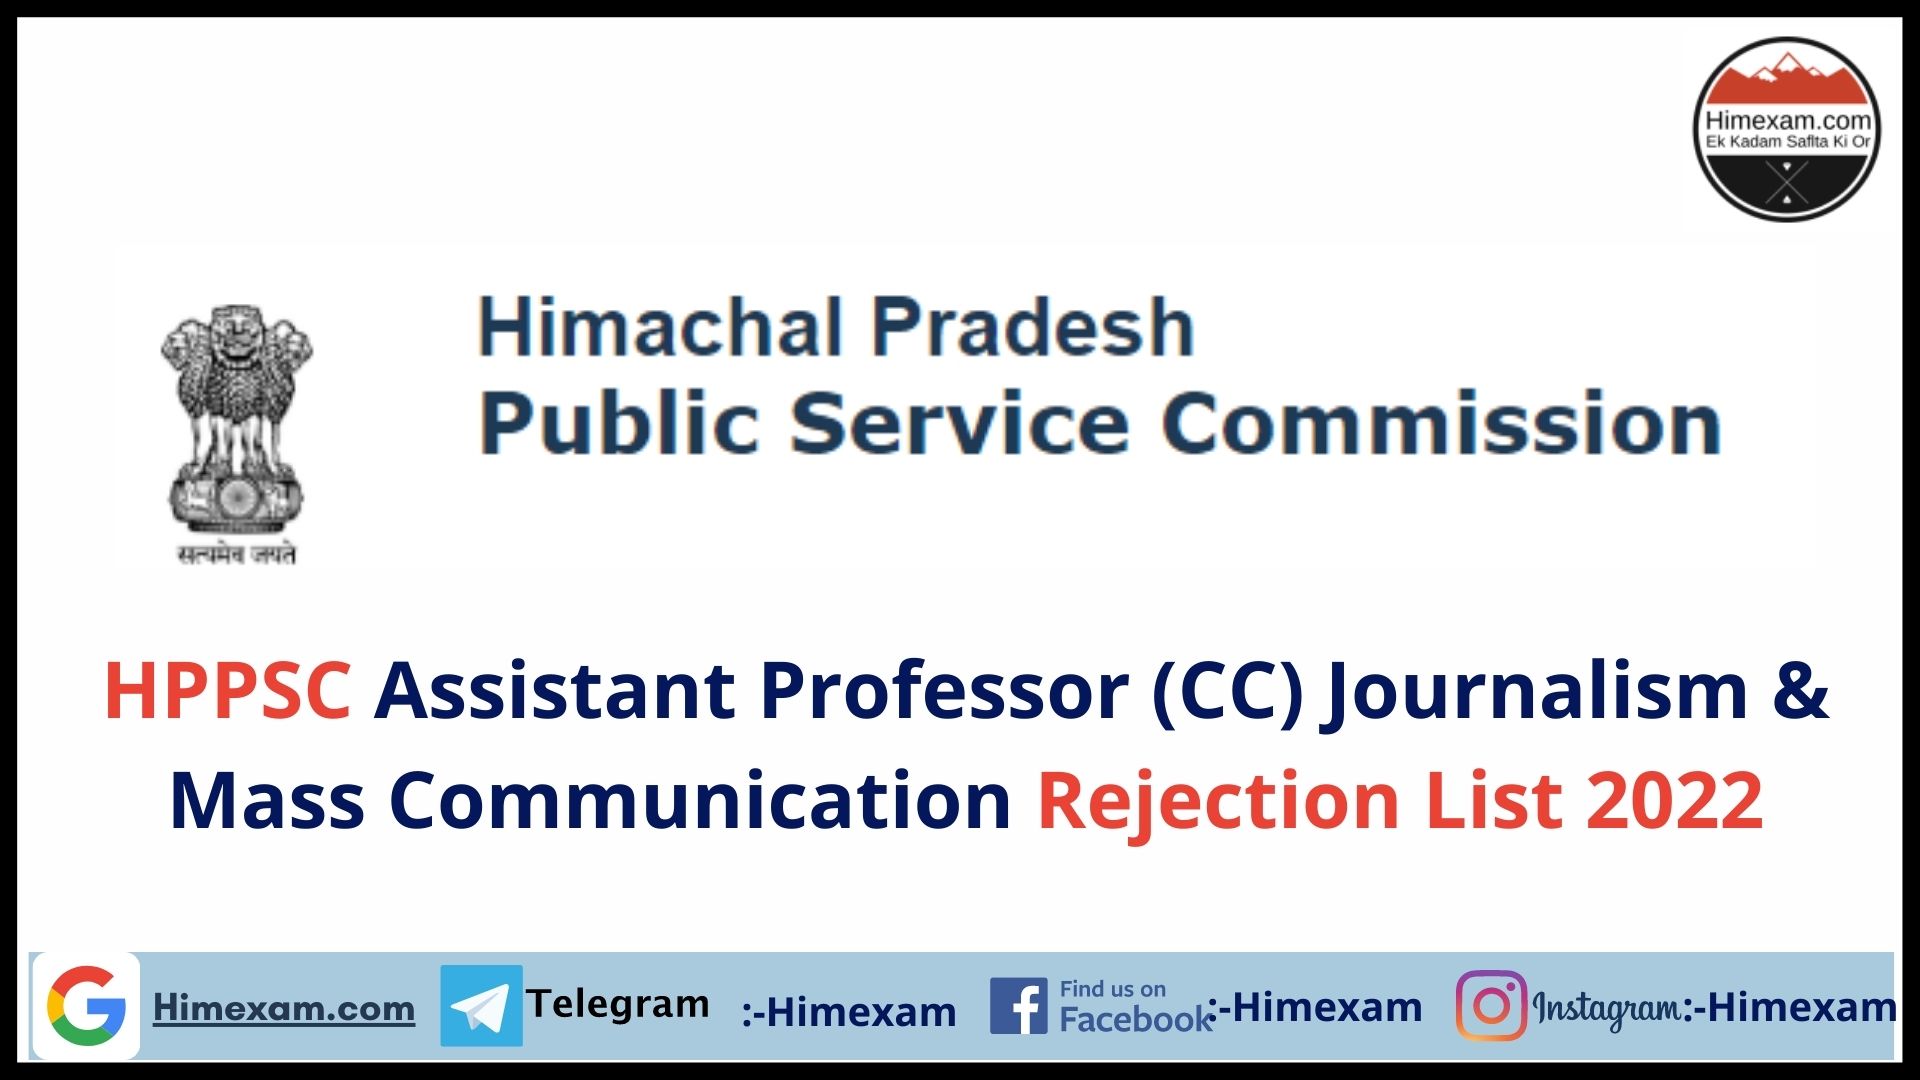 HPPSC Assistant Professor (CC) Journalism & Mass Communication Rejection List 2022